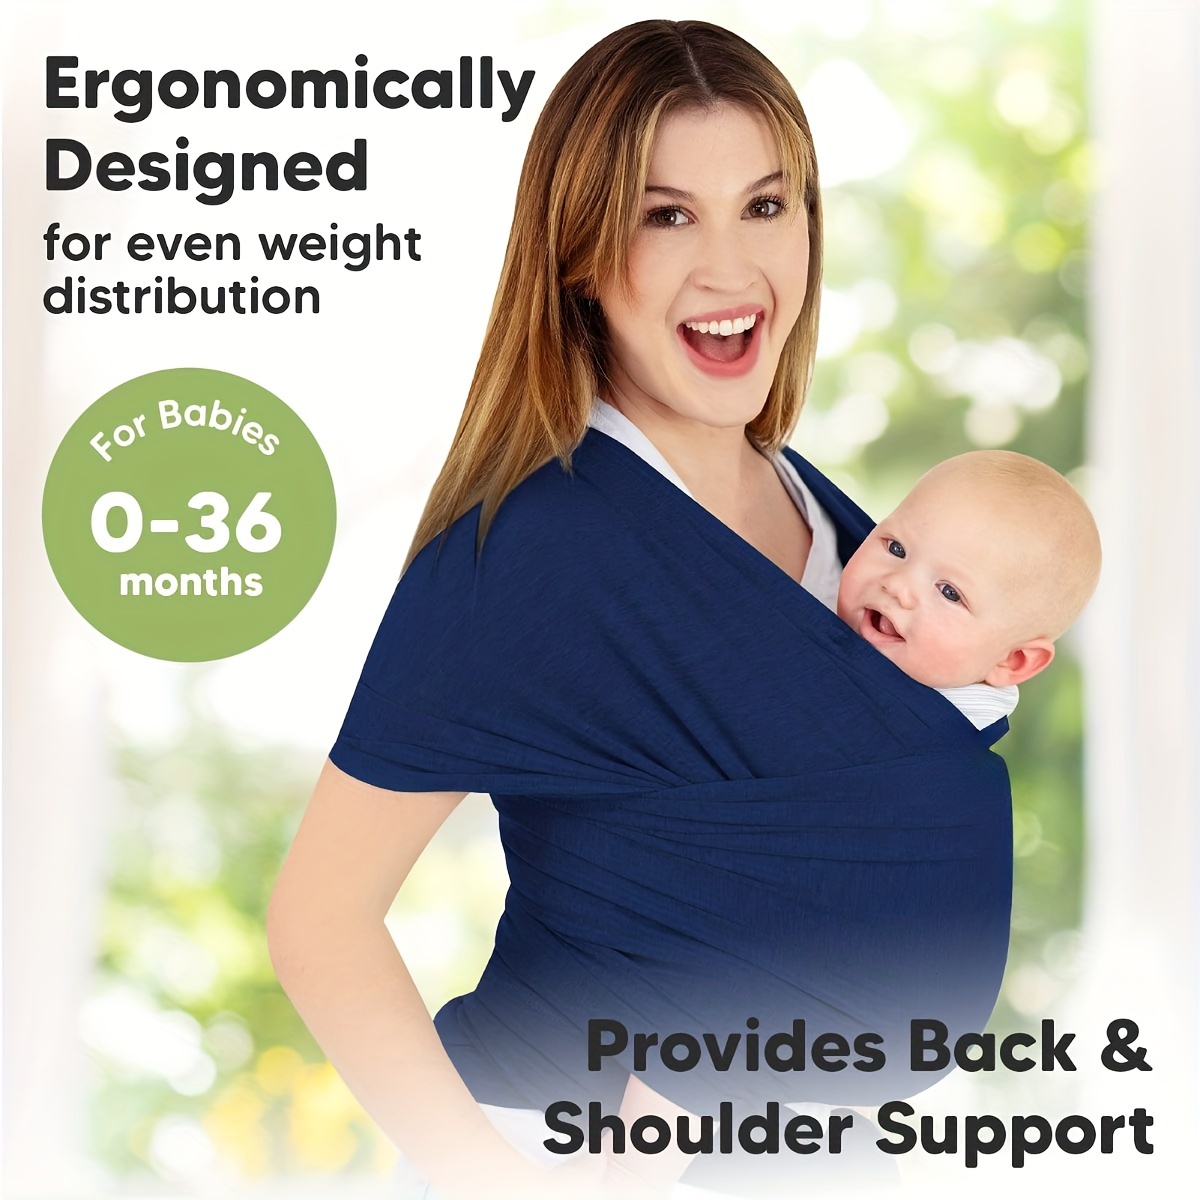 Porte-bébé enveloppant, écharpe pour bébé nouveau-né à tout-petit, porte- bébé respirant et mains libres, porte-bébé réglable (gris foncé)